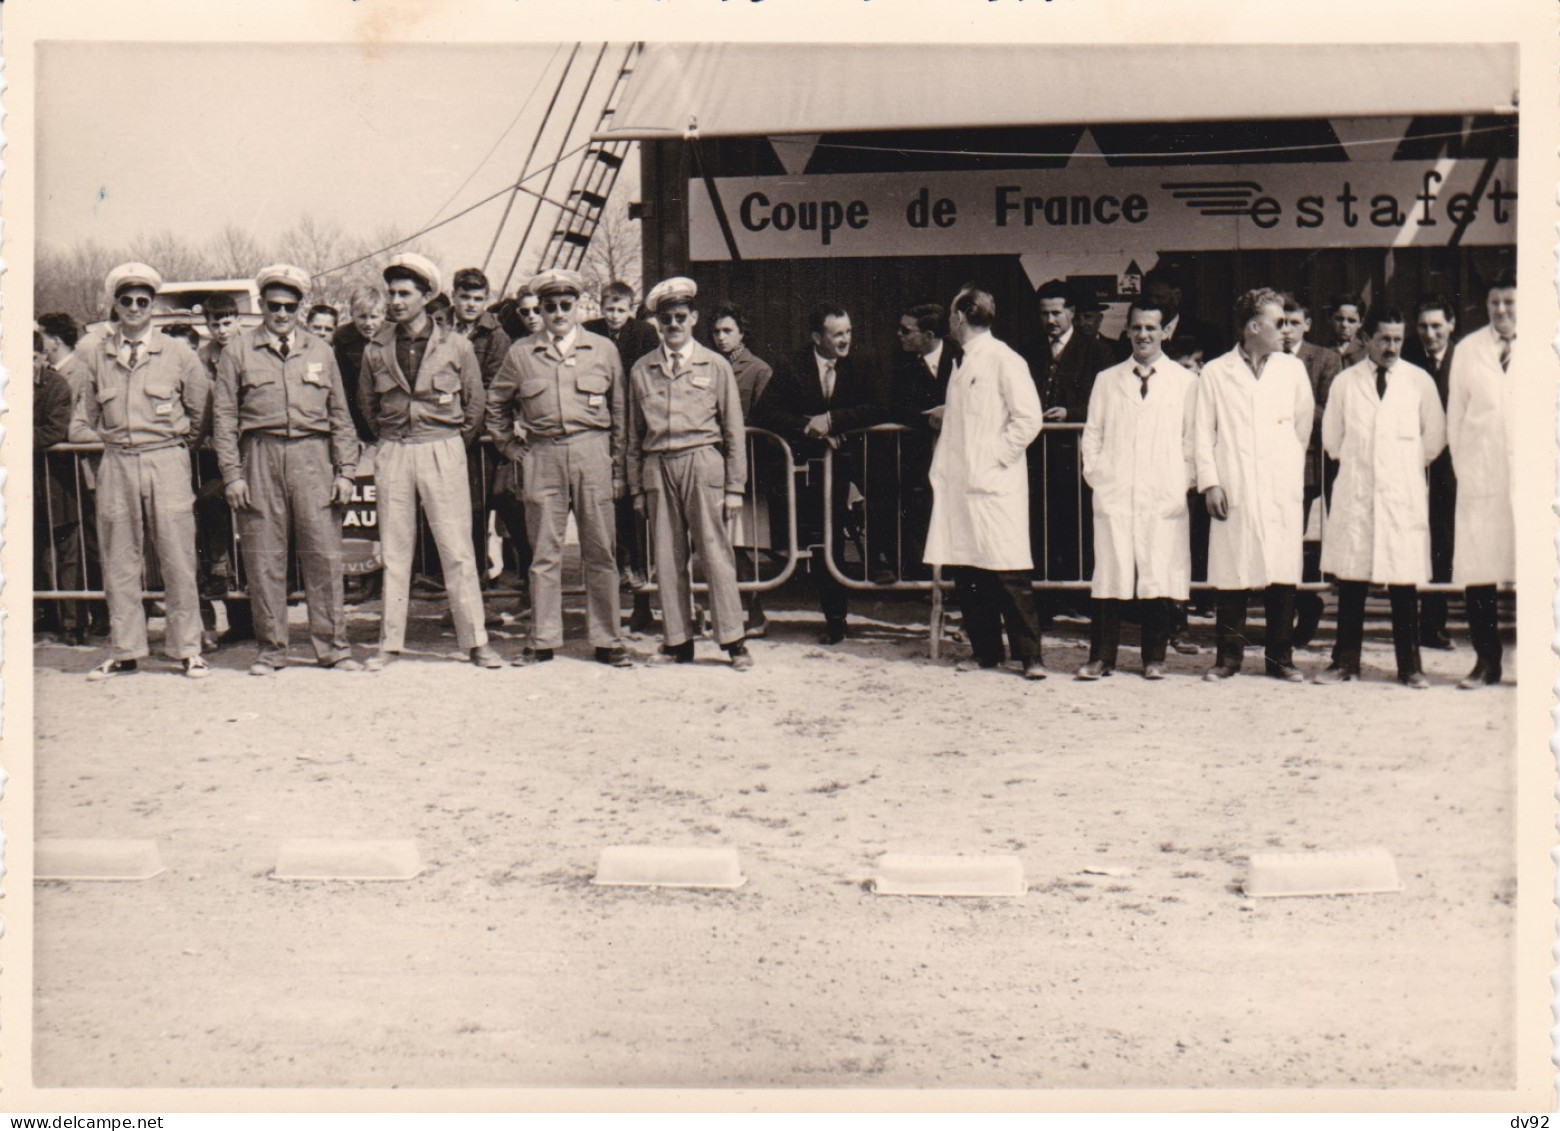 COUPE DE FRANCE ESTAFETTE RENAULT CIRCA 1950 - Coches